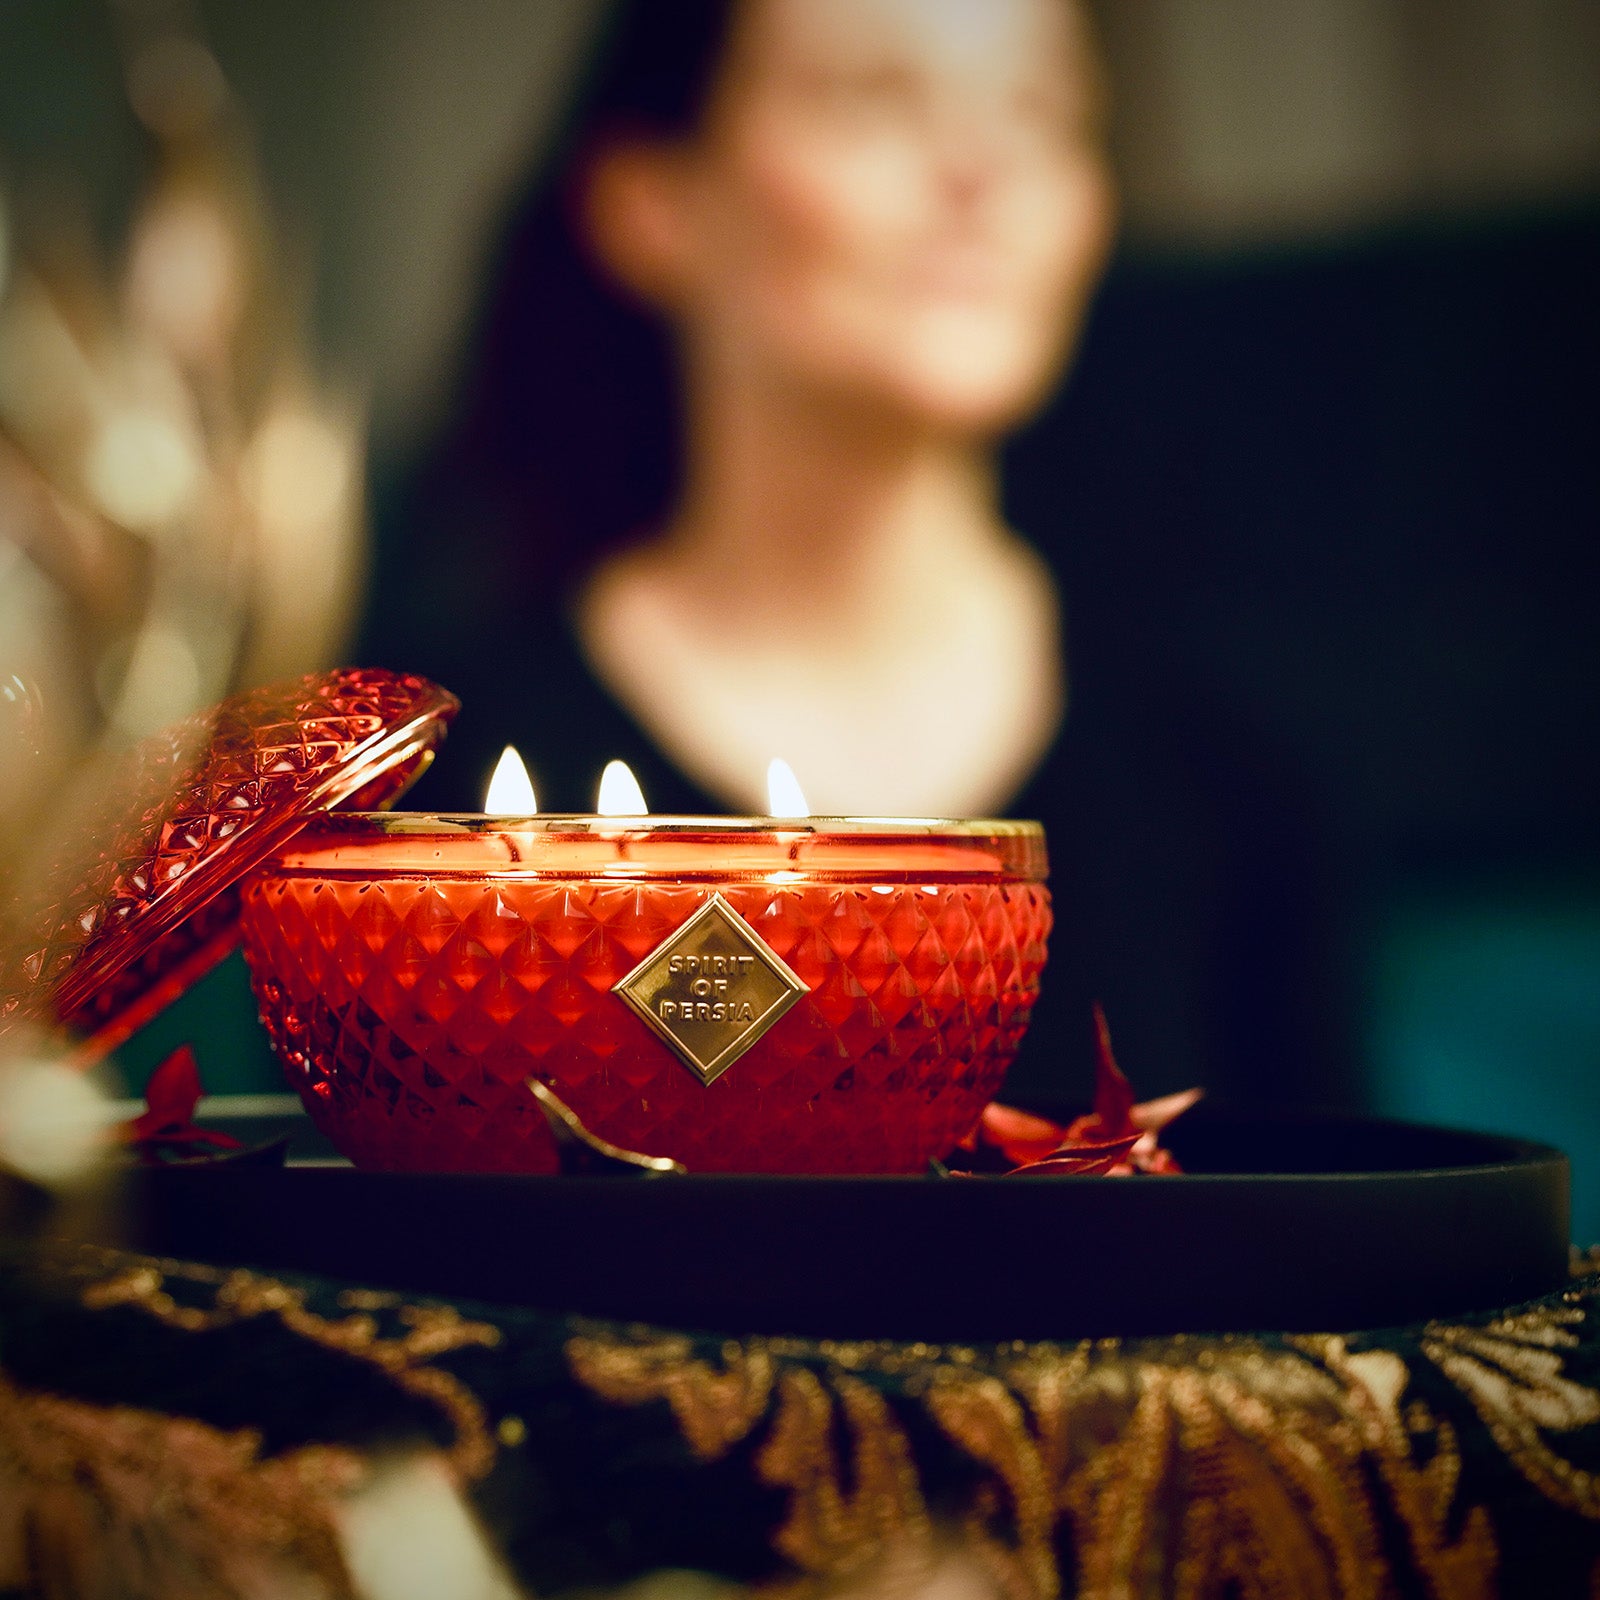 Unsere hochwertige Duftkerze Atussa ist auf einem schwarzen Tablett gestellt. Im Hintergrund meditiert eine dunkelhaarige Frau in einem schwarzen Pullover.